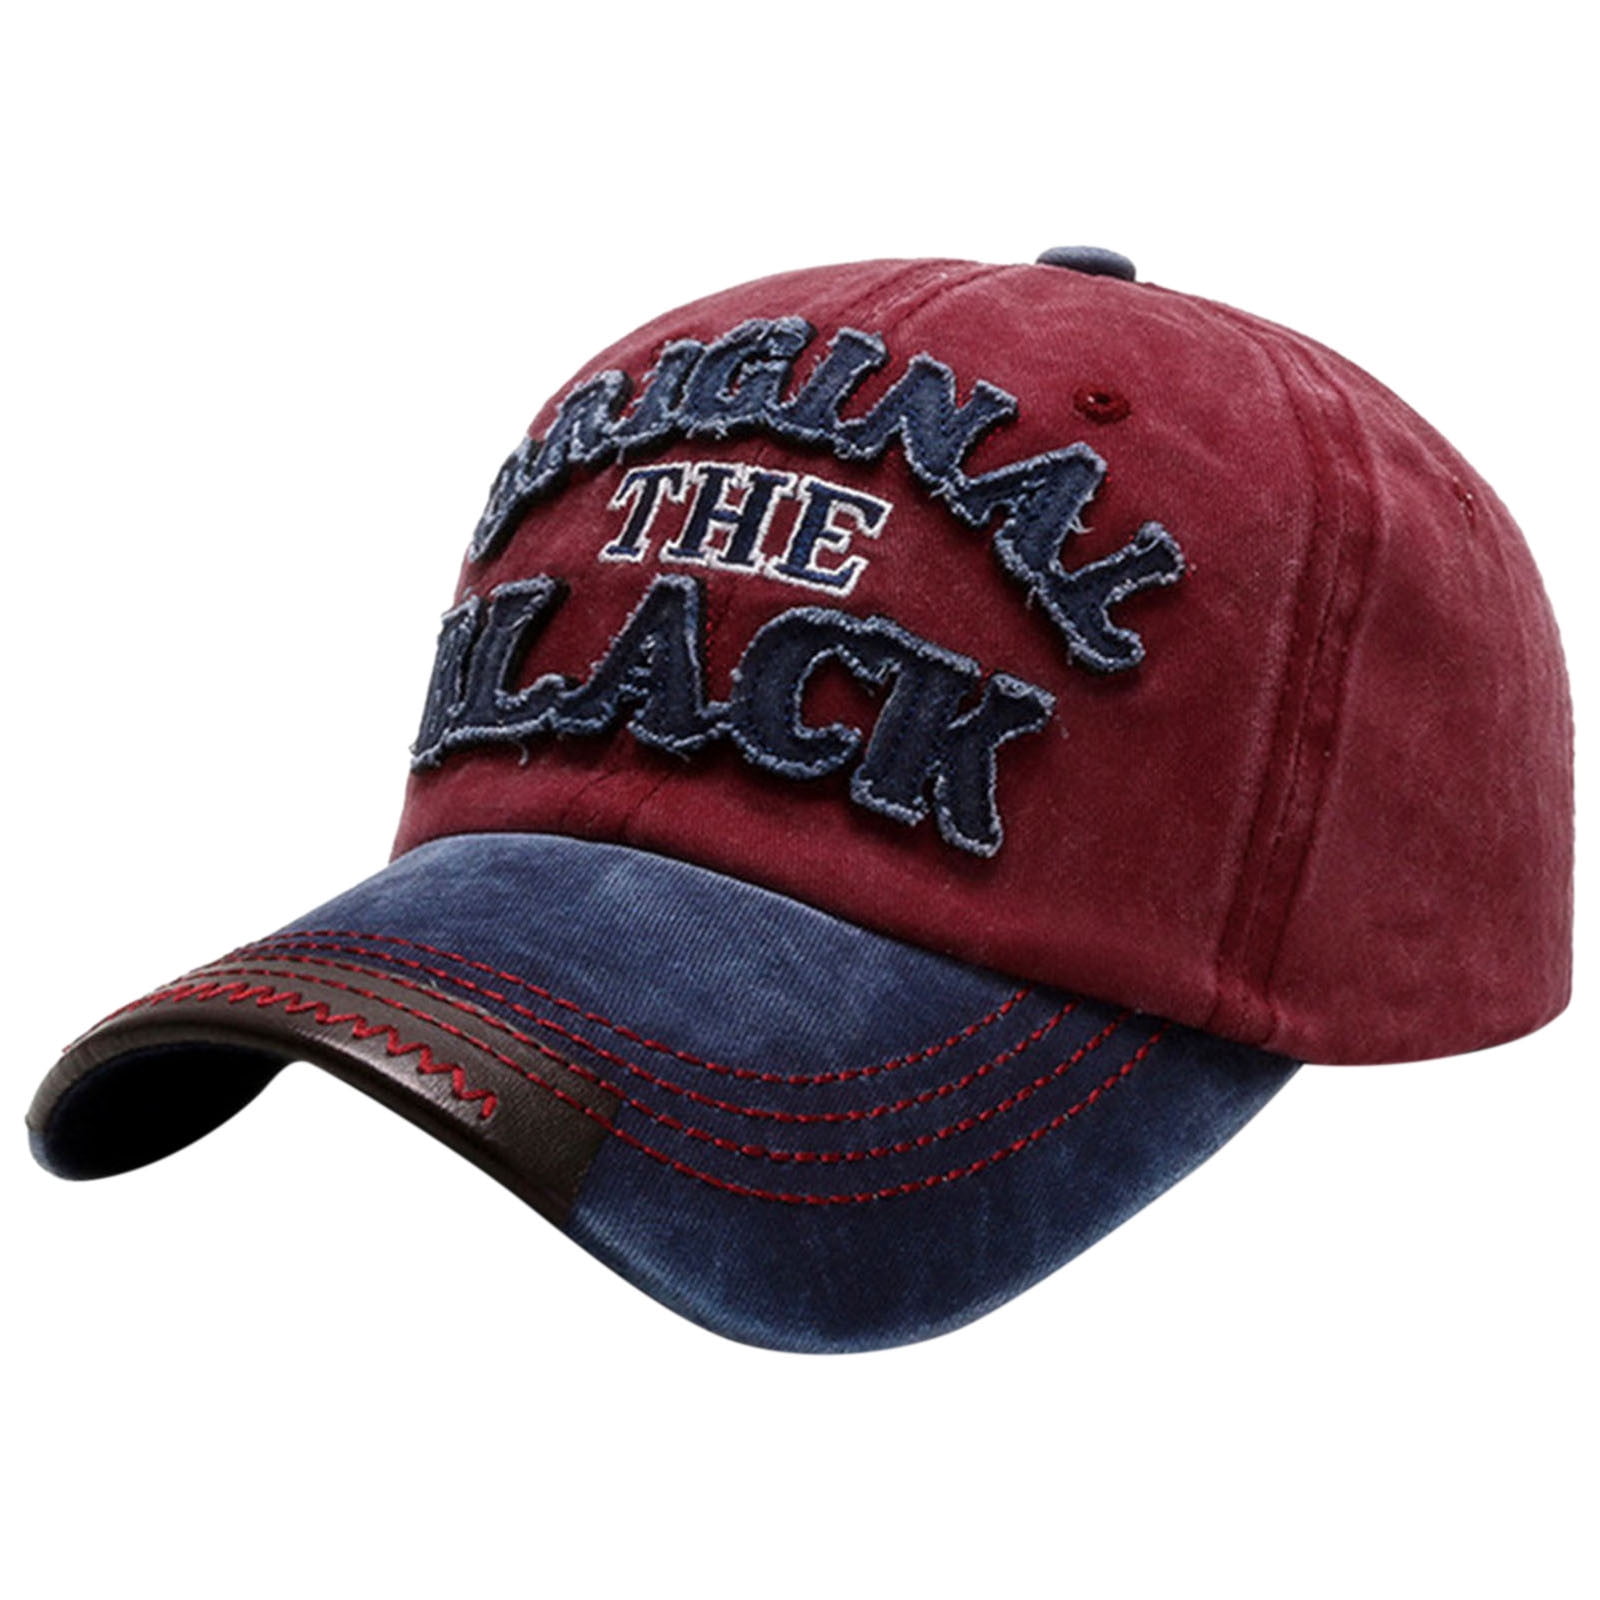 Baseball Caps Throwback Hats